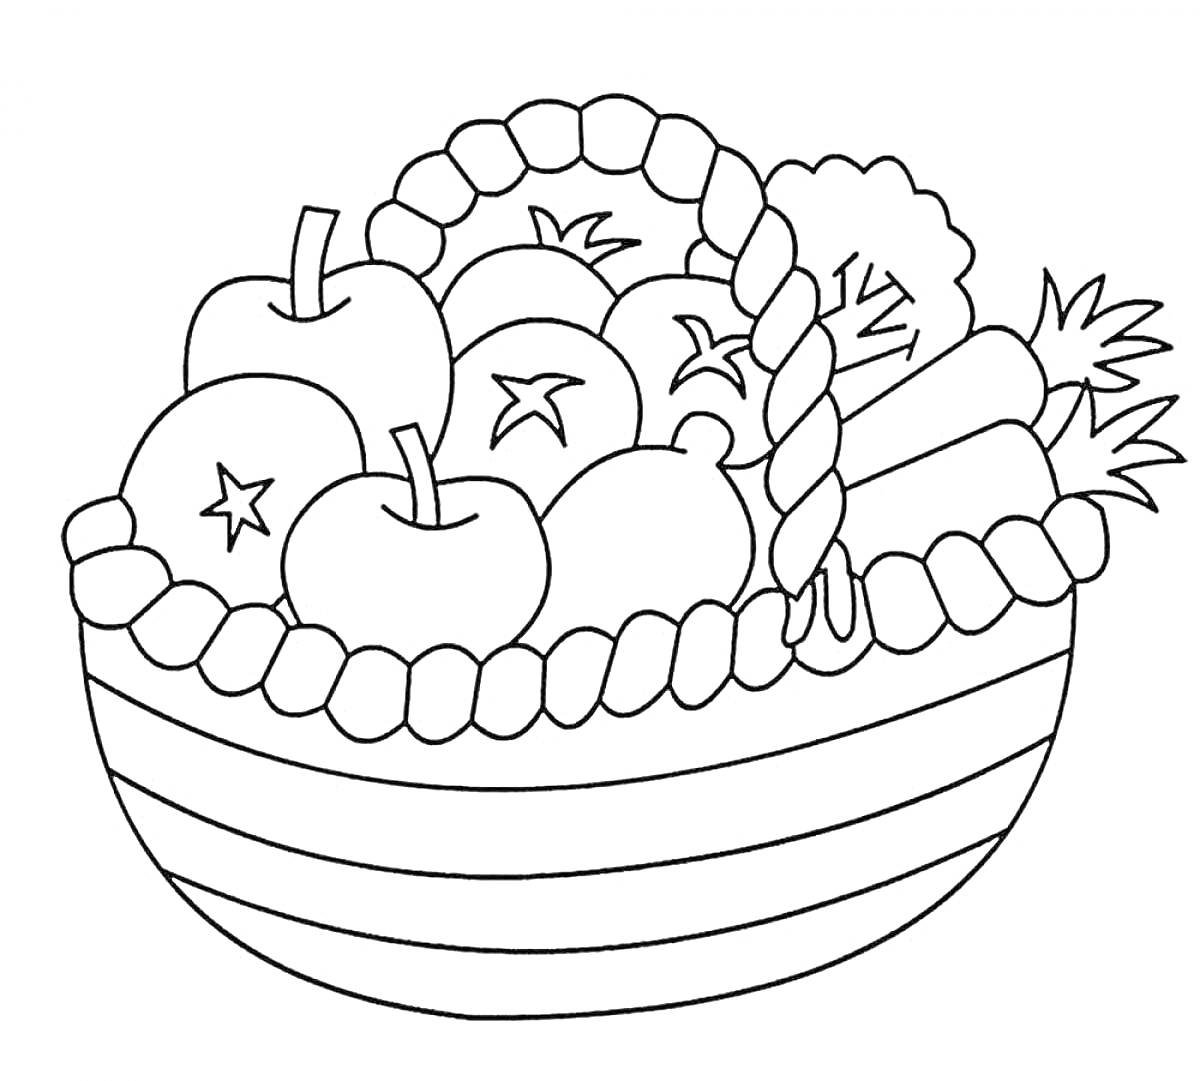 Корзинка с фруктами и овощами (яблоки, виноград, морковь, брокколи)